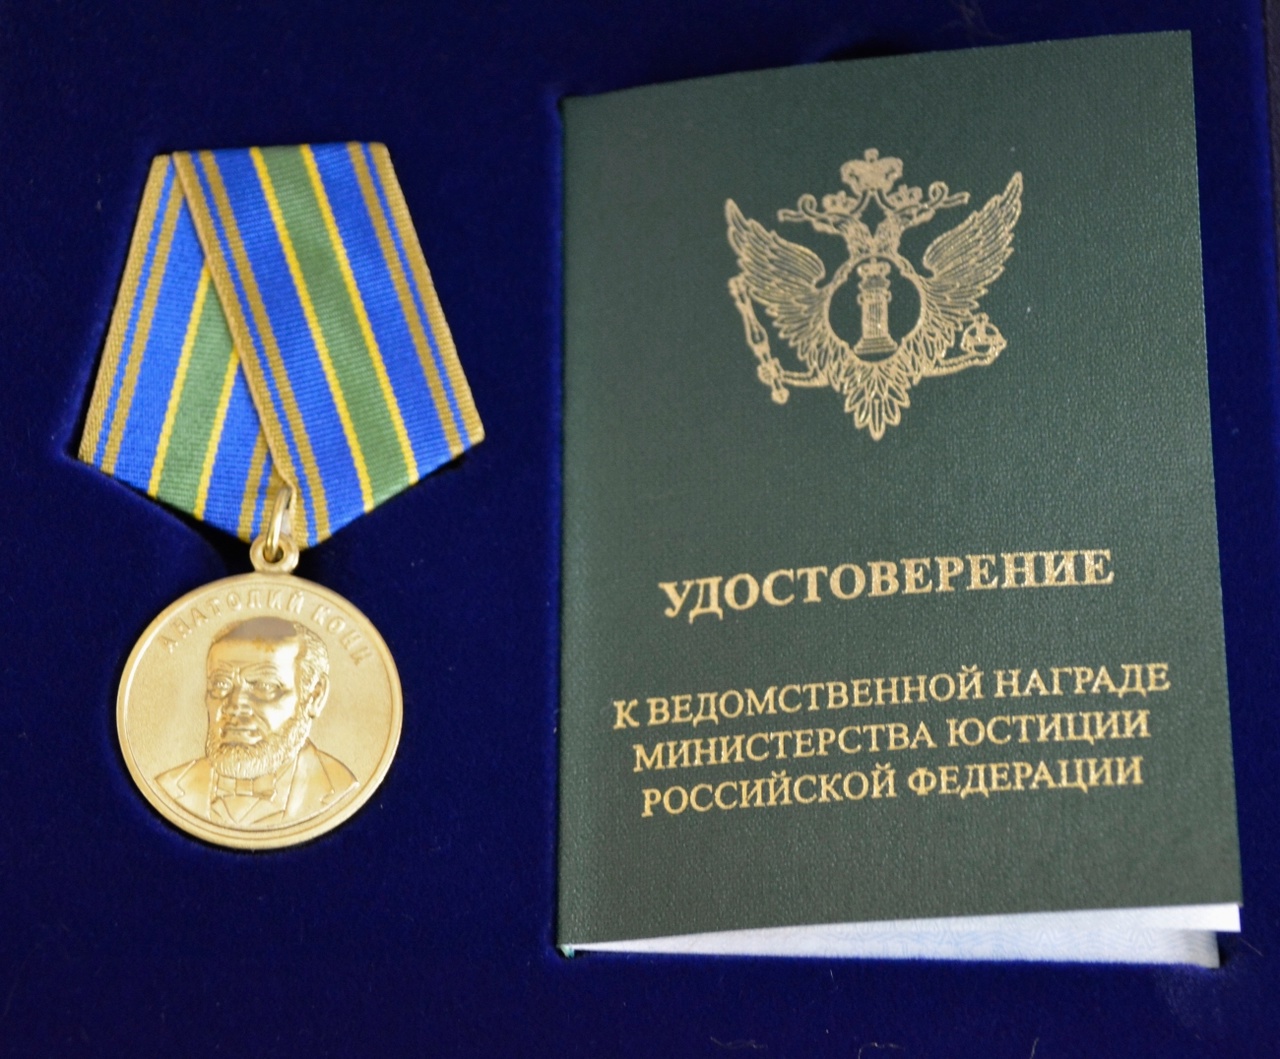 Аудитор КСП СПб Егор Бушев награжден высшей ведомственной медалью Министерства юстиции РФ